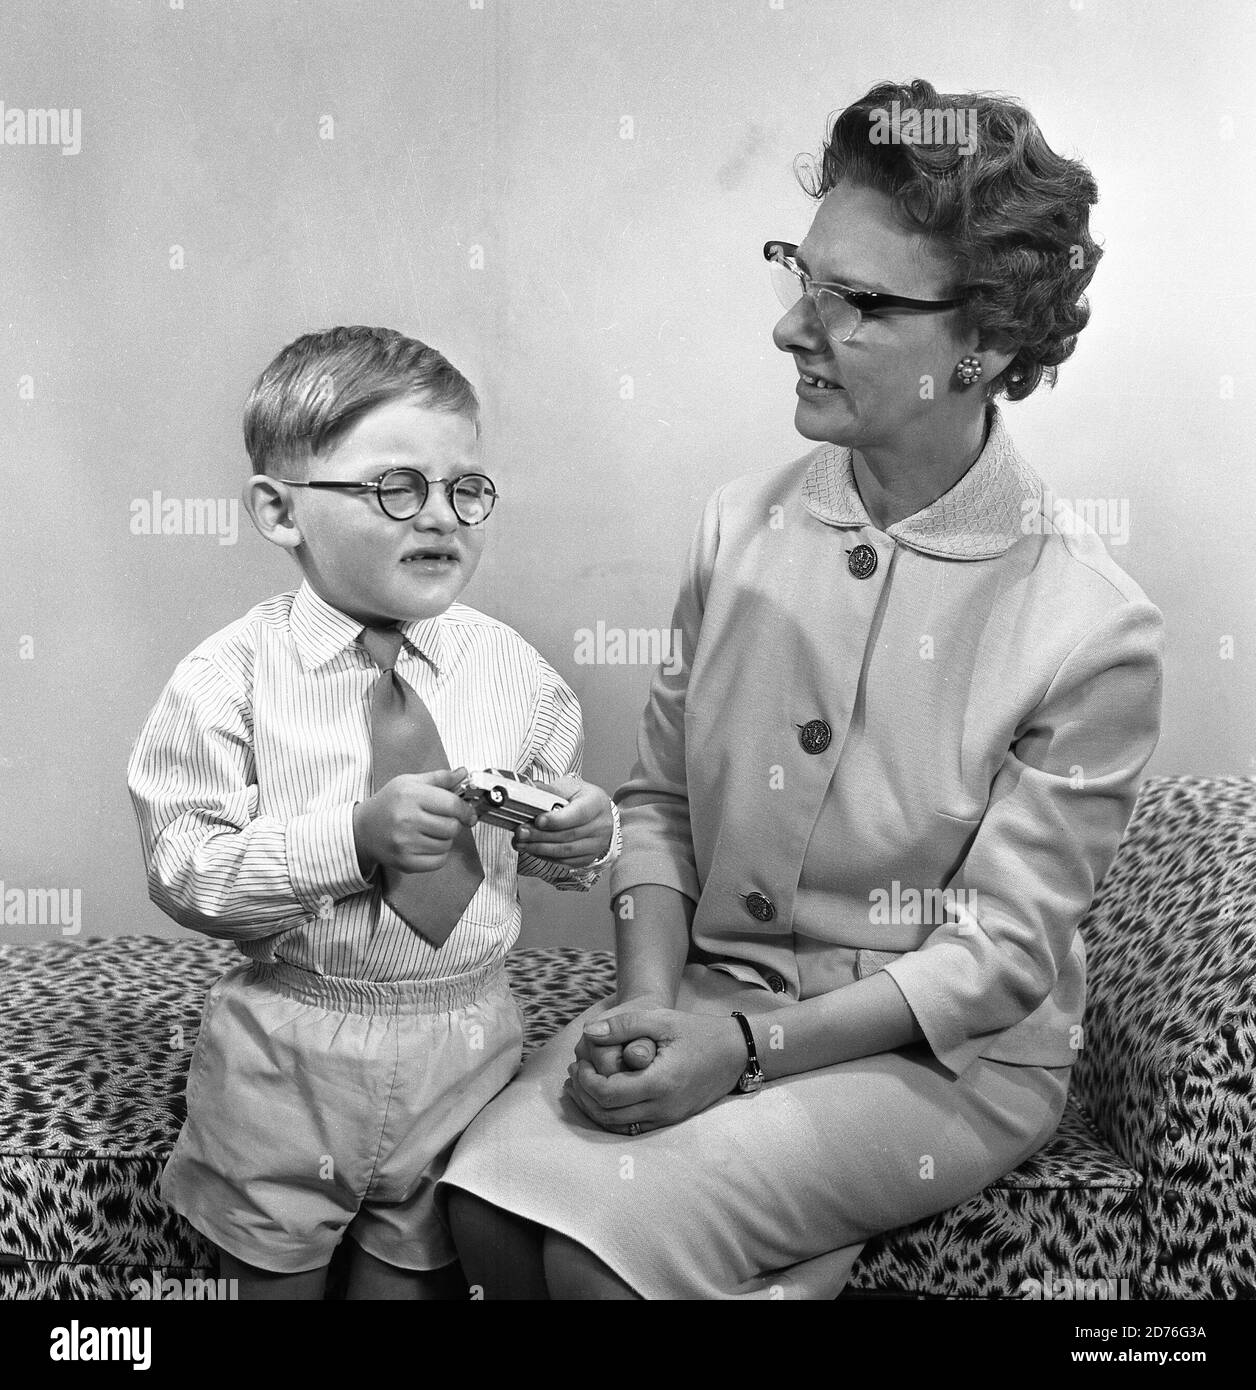 années 1960, historique, comme la mère, comme le fils! Petit garçon avec de petites lunettes rondes et tenant sa voiture en métal jouet dans les mains debout à côté de sa mère, qui porte également une paire de lunettes, qui ont été l'un des styles féminins populaires cette époque, Angleterre, Royaume-Uni. Banque D'Images